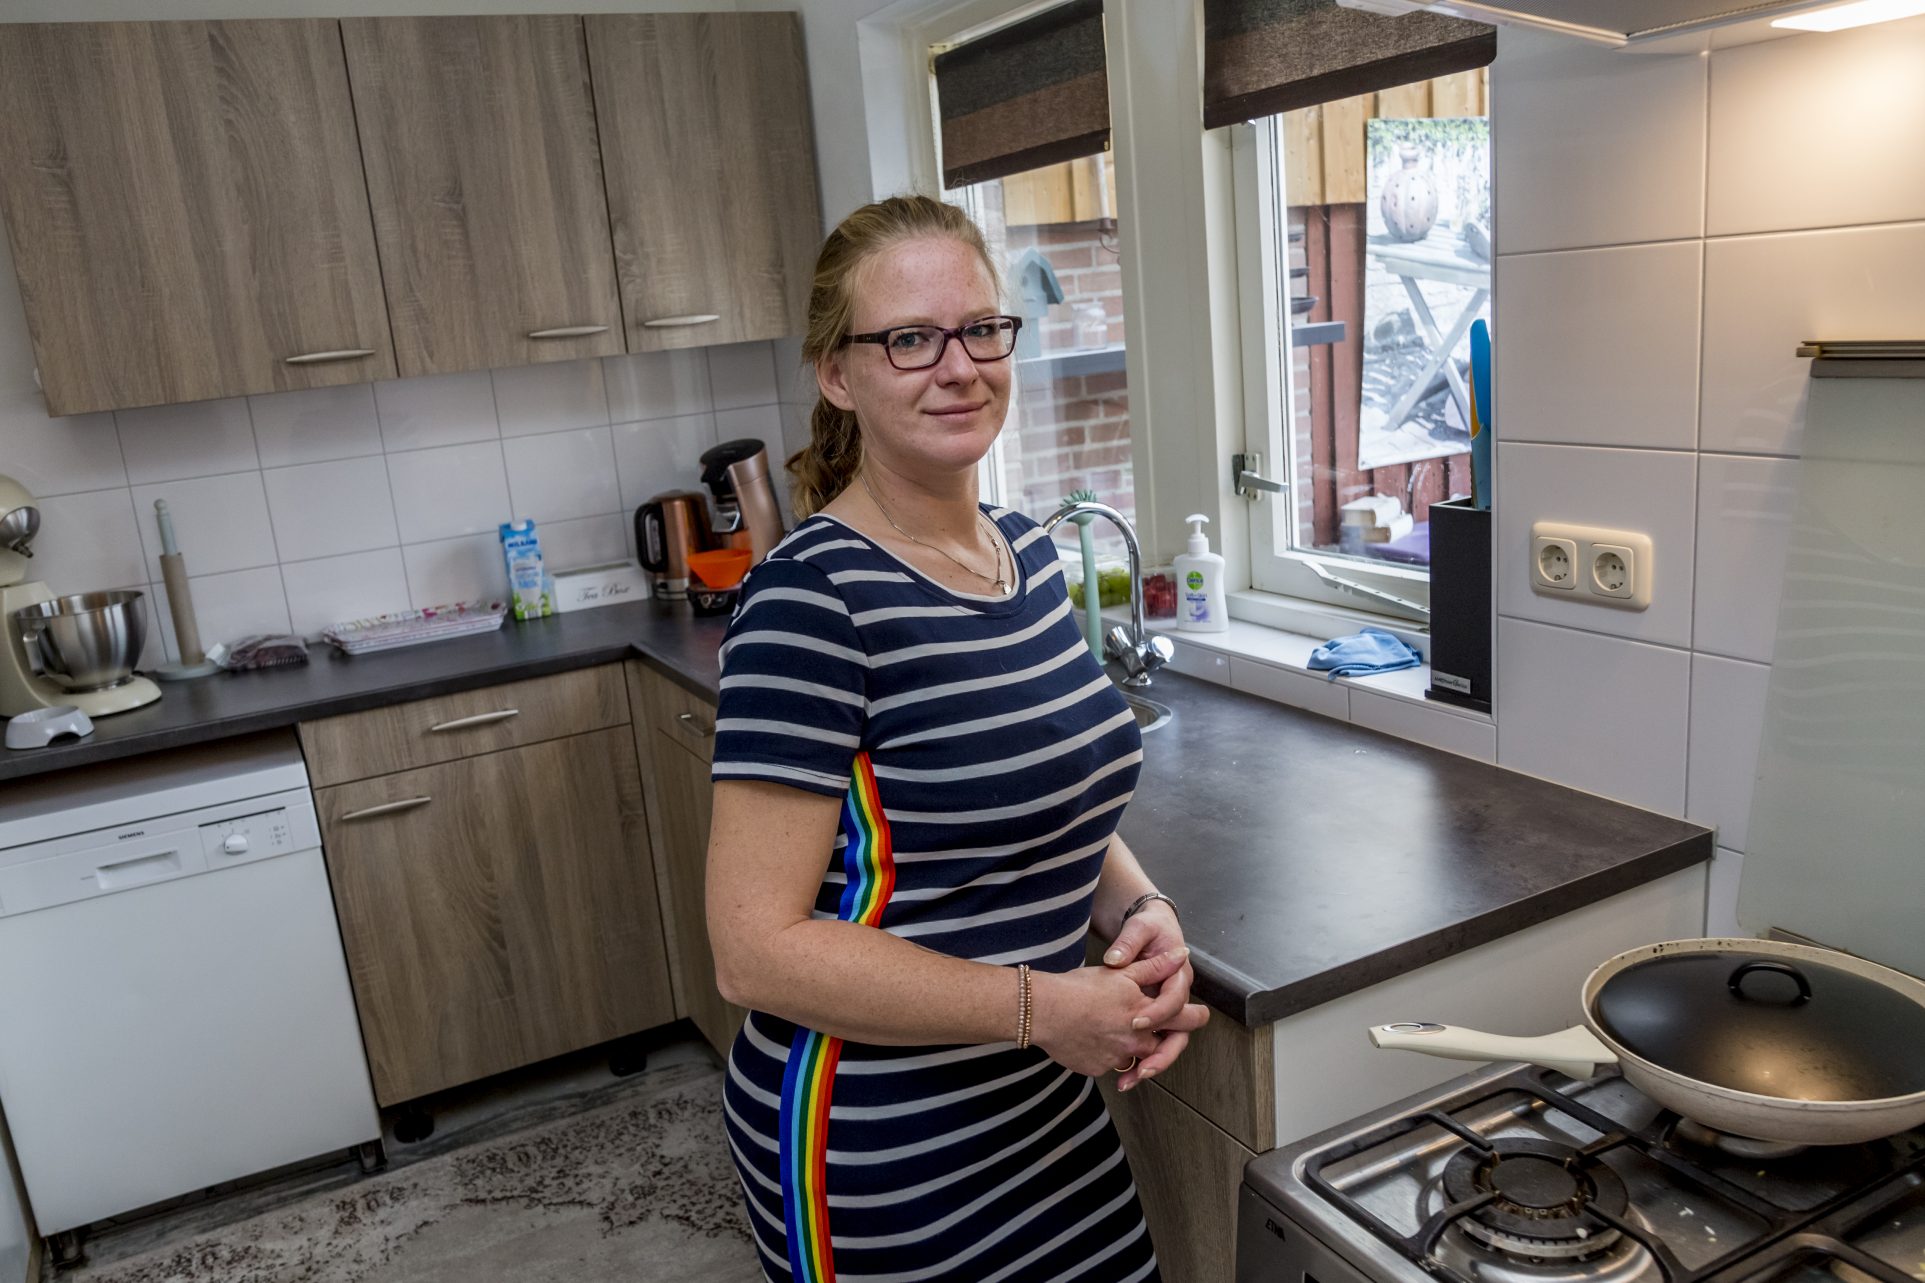 Jet van de Riet (34) en haar dochter Britt (15), Sint-Oedenrode. Planmatig onderhoud aan een groot aantal woningen, gerealiseerd in opdracht van corporatie Woonmeij. Serviceteam Schijndel vernieuwt daar de keuken, badkamer en het toilet. Samen met de bewoners stemmen we de planning af.